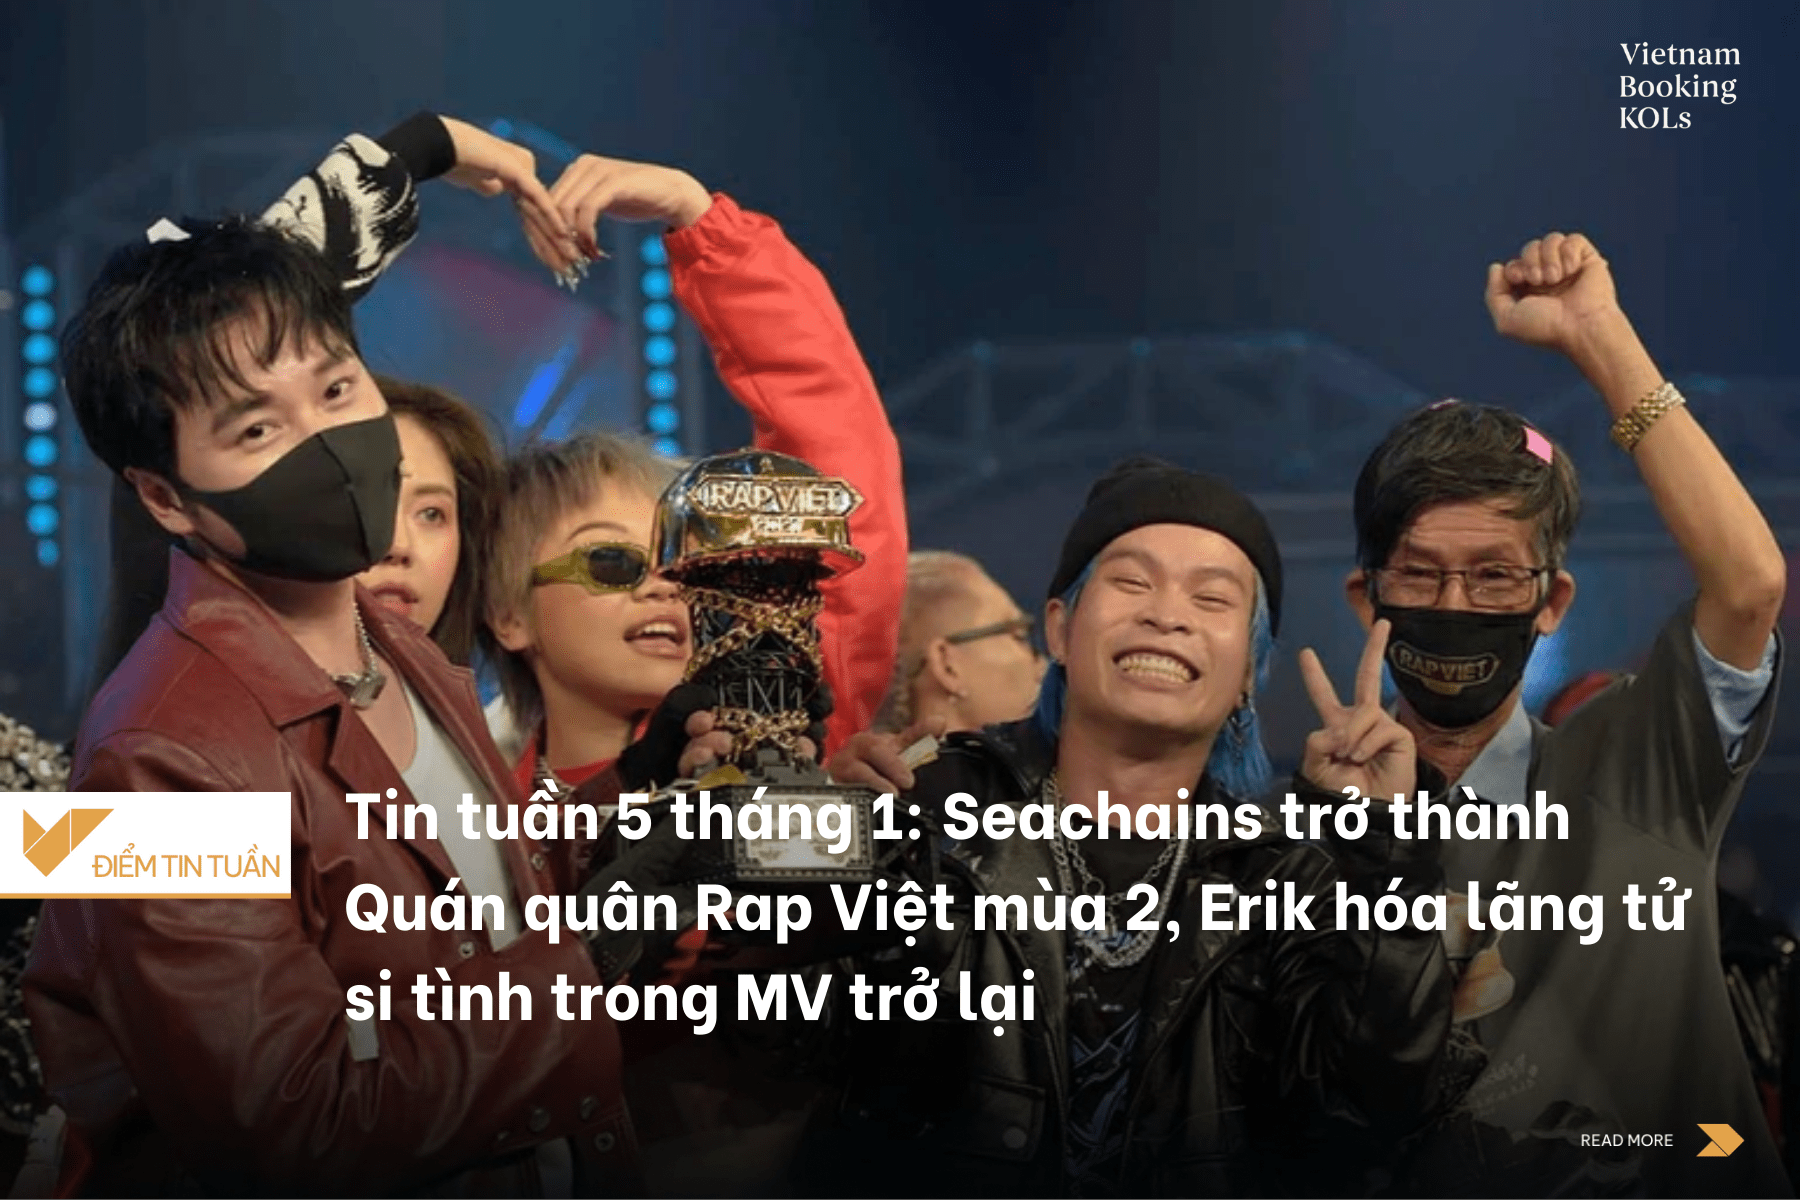 Tin tuần 5 tháng 1: Seachains trở thành Quán quân Rap Việt mùa 2, Erik hóa lãng tử si tình trong MV trở lại